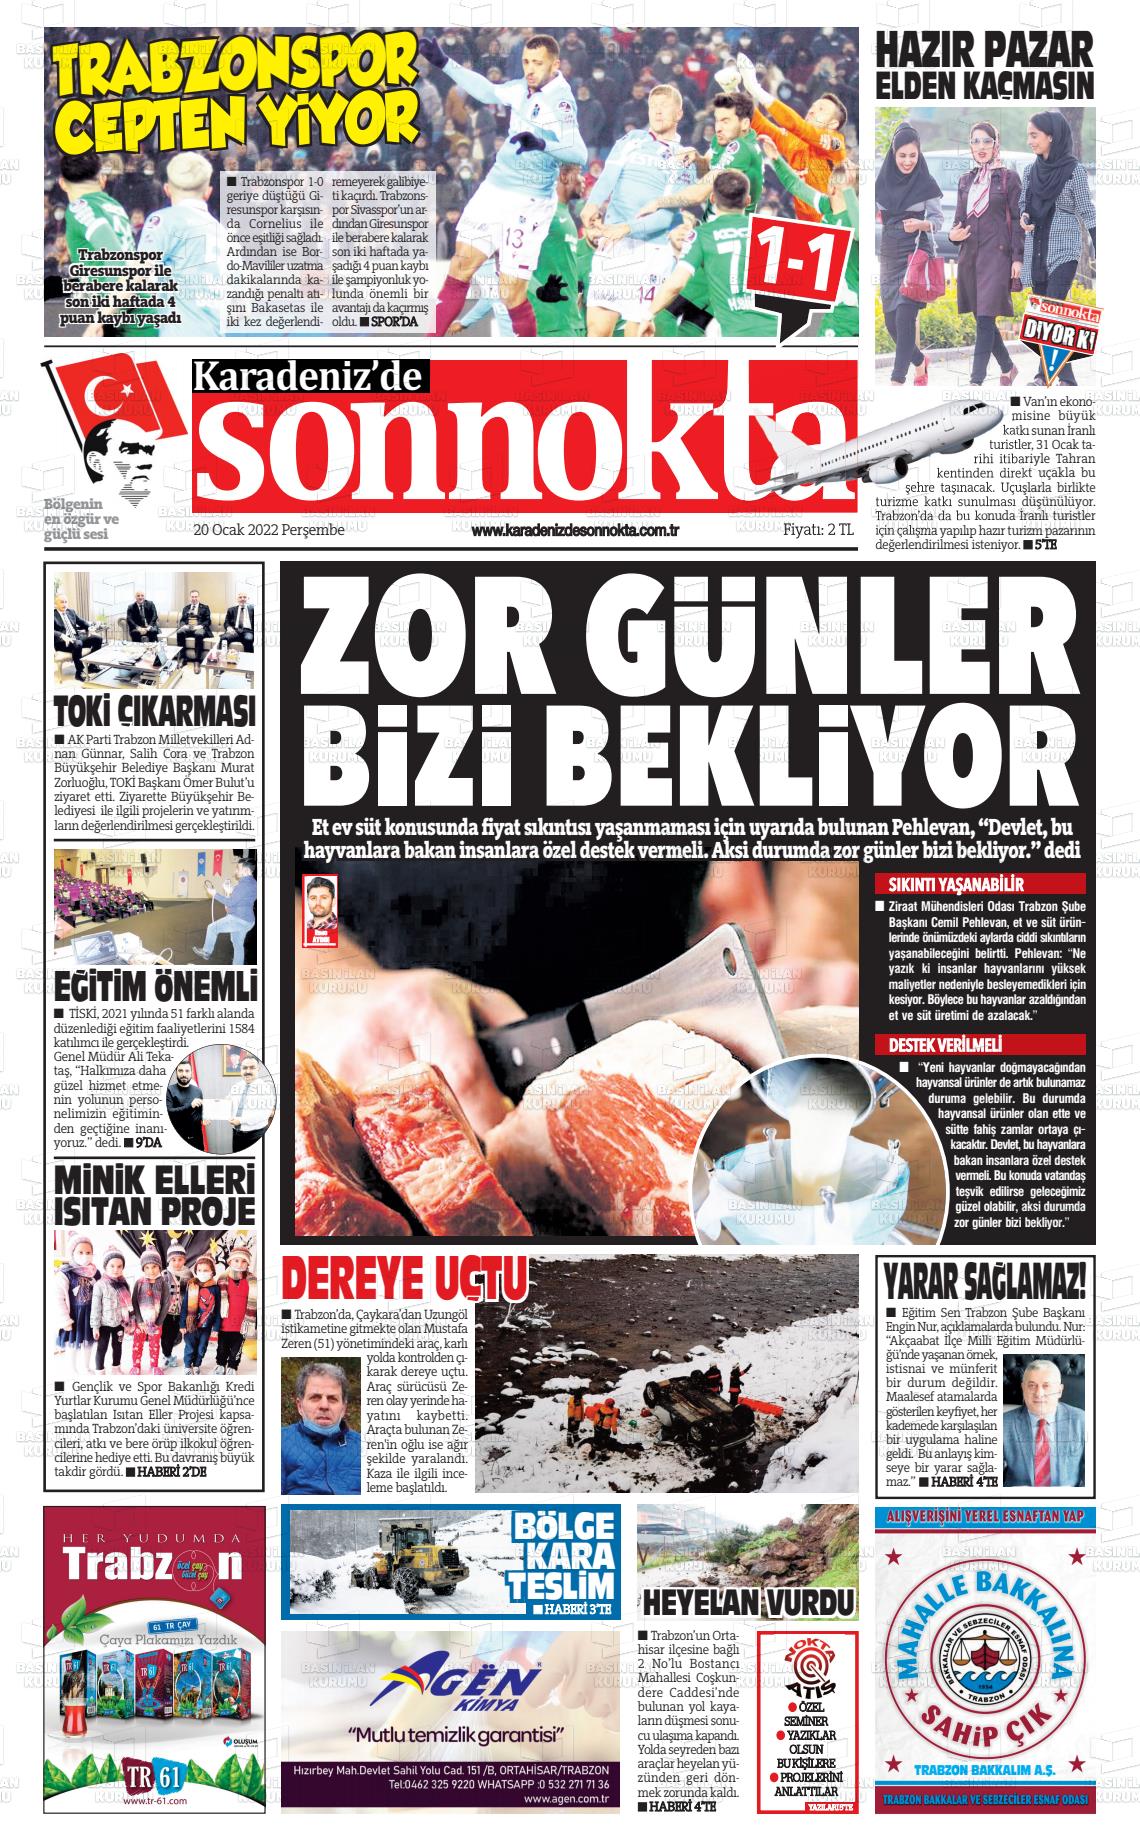 20 Ocak 2022 Karadeniz'de Sonnokta Gazete Manşeti